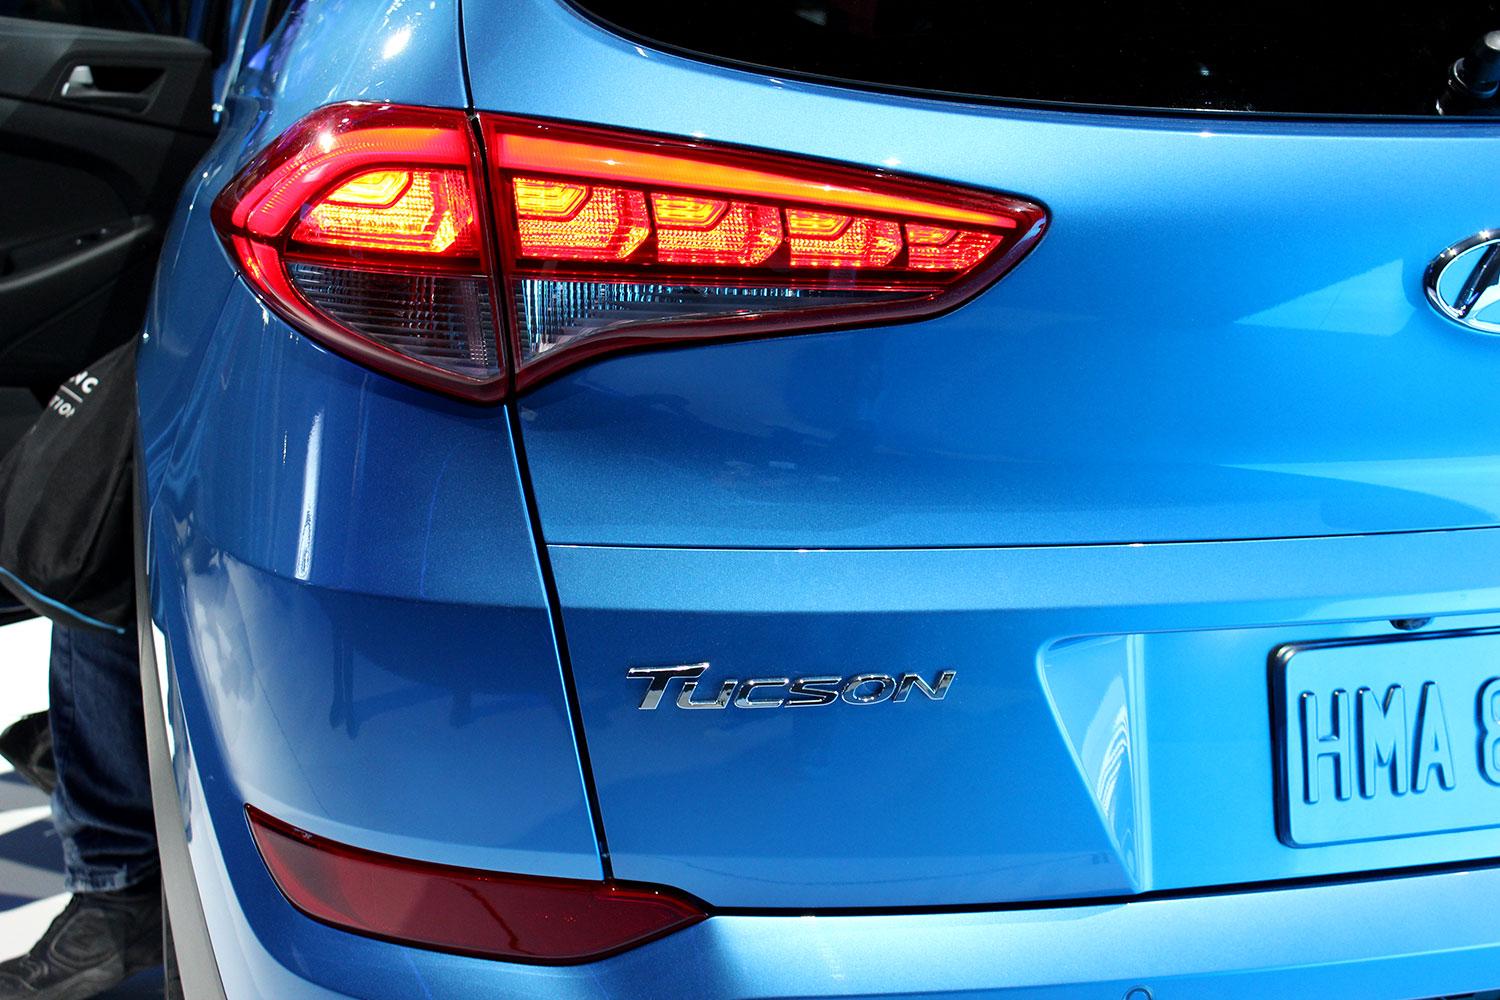 2016 Hyundai Tuscon tail light